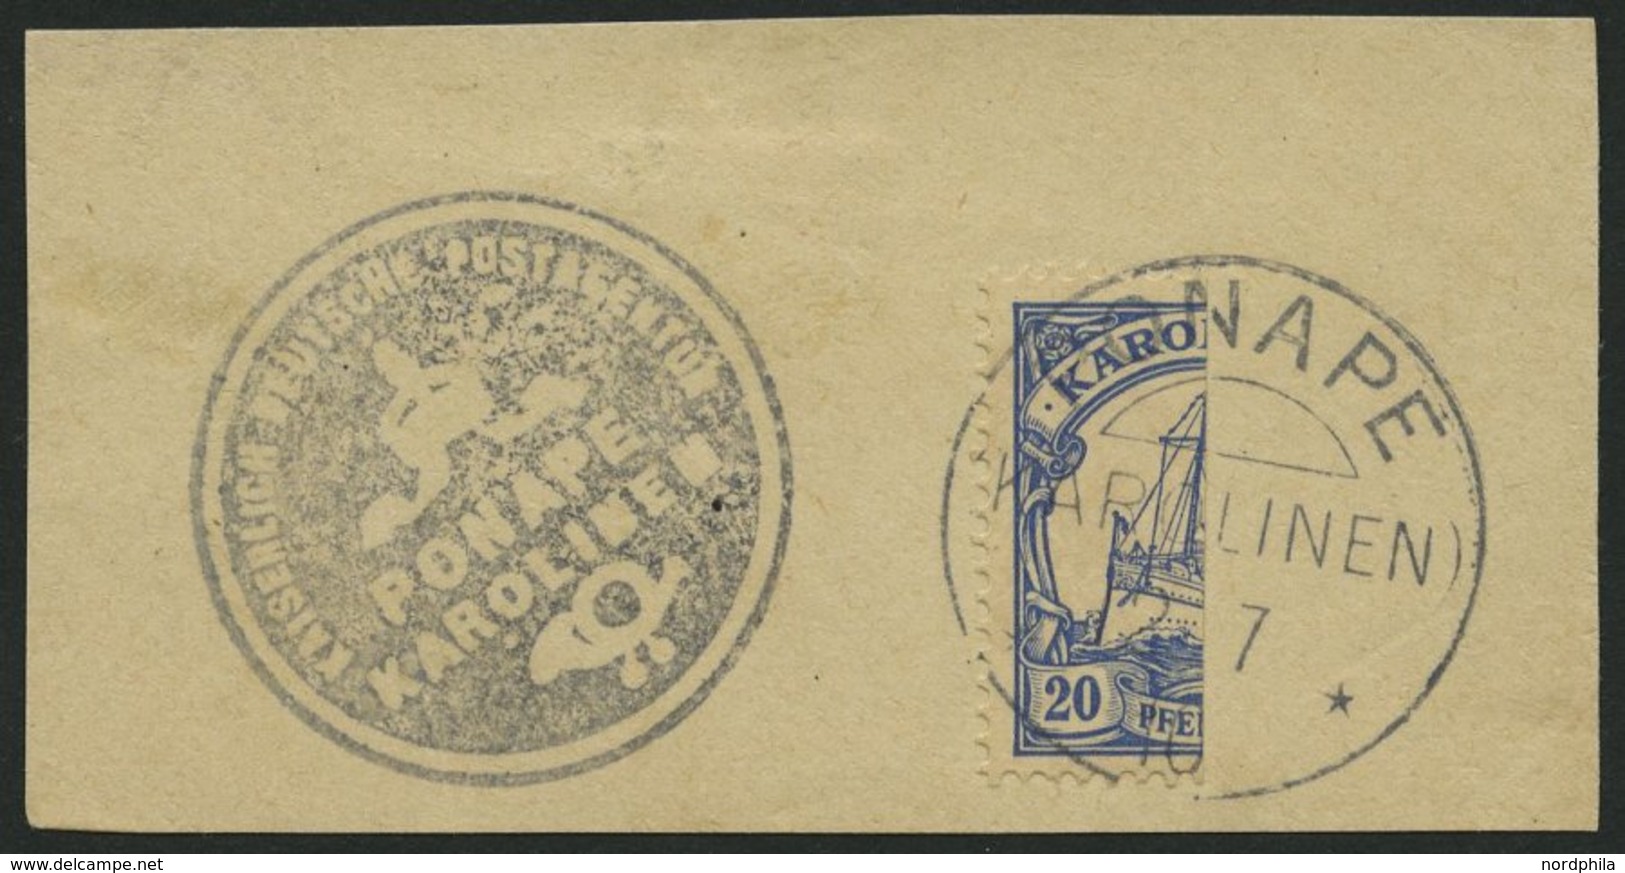 KAROLINEN 10H BrfStk, 1910, 20 Pf. Halbiert, Sog. 3. Ponape-Ausgabe, Prachtbriefstück, Fotoattest Jäschke-L., (3000.-) - Caroline Islands